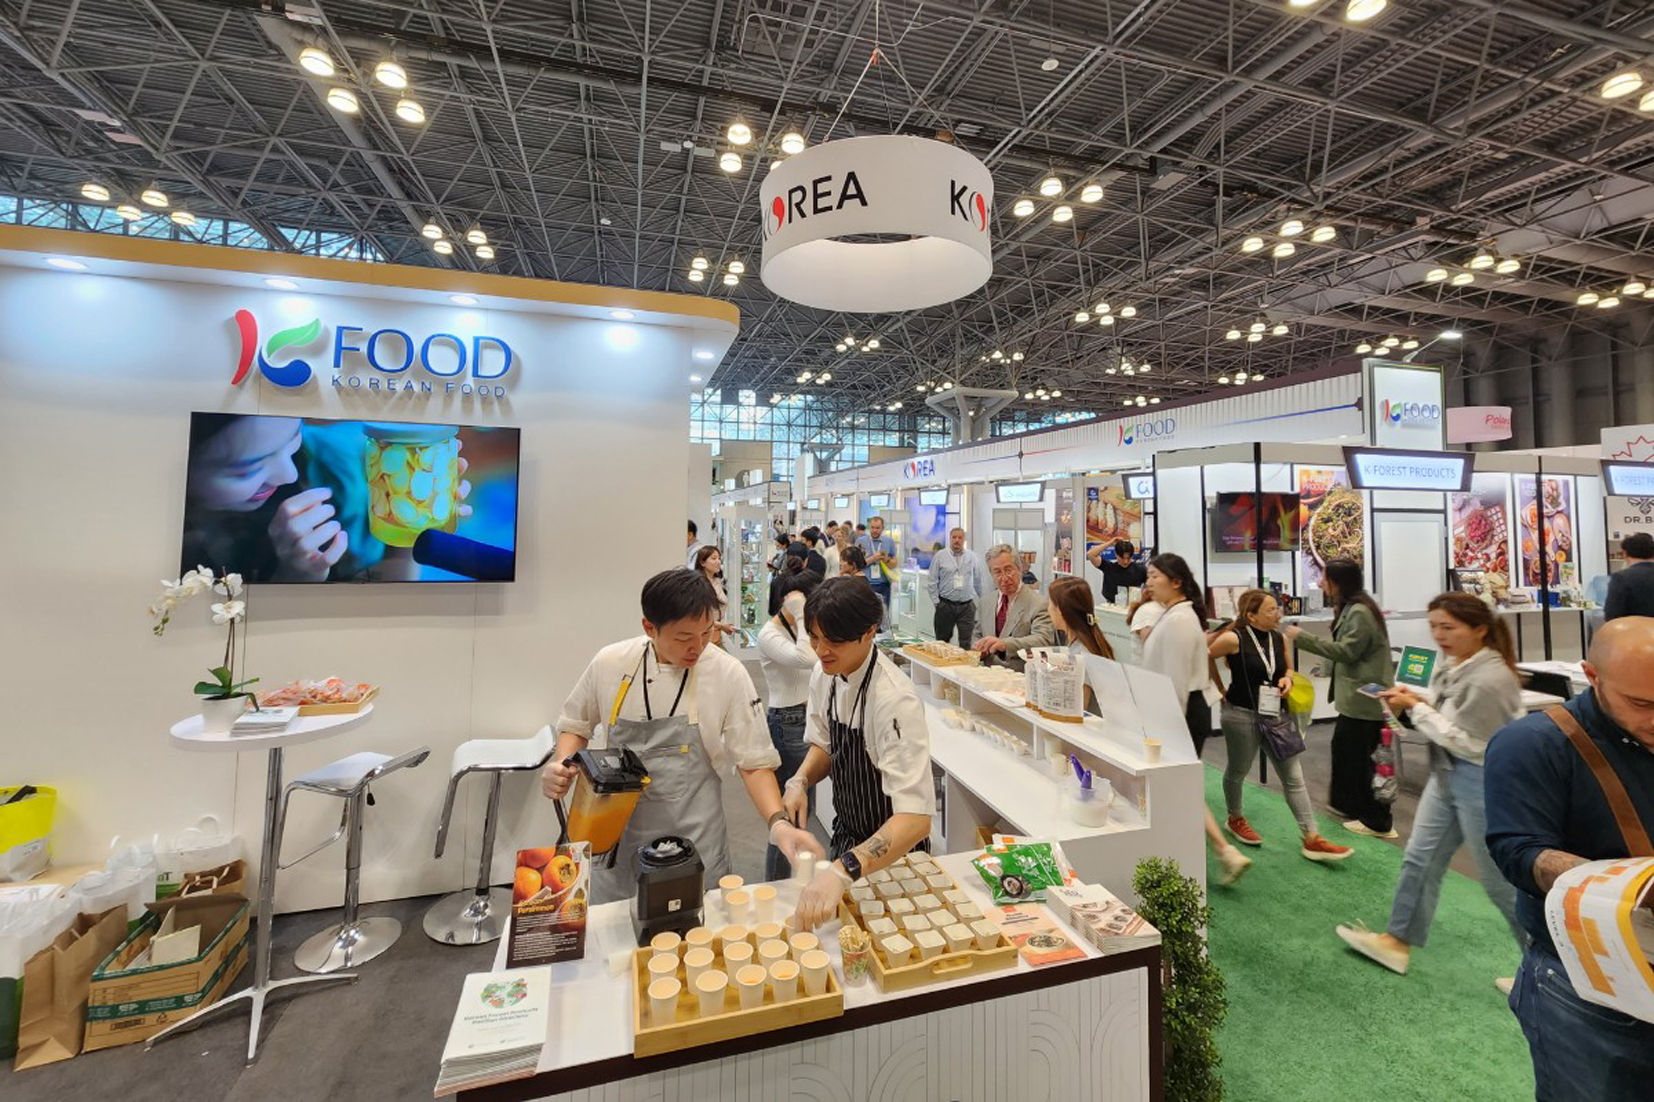 미국과 한국 등 전 세계 유명 식품업체들이 참가한 가운데 맨해튼 재빗센터에서 열린 '2023 여름 팬시푸드 쇼'에는 한국의 유명 식품업체 46개 회사가 참가해 한식과 간편식 각종 상품을 소개해 인기를 모았다.